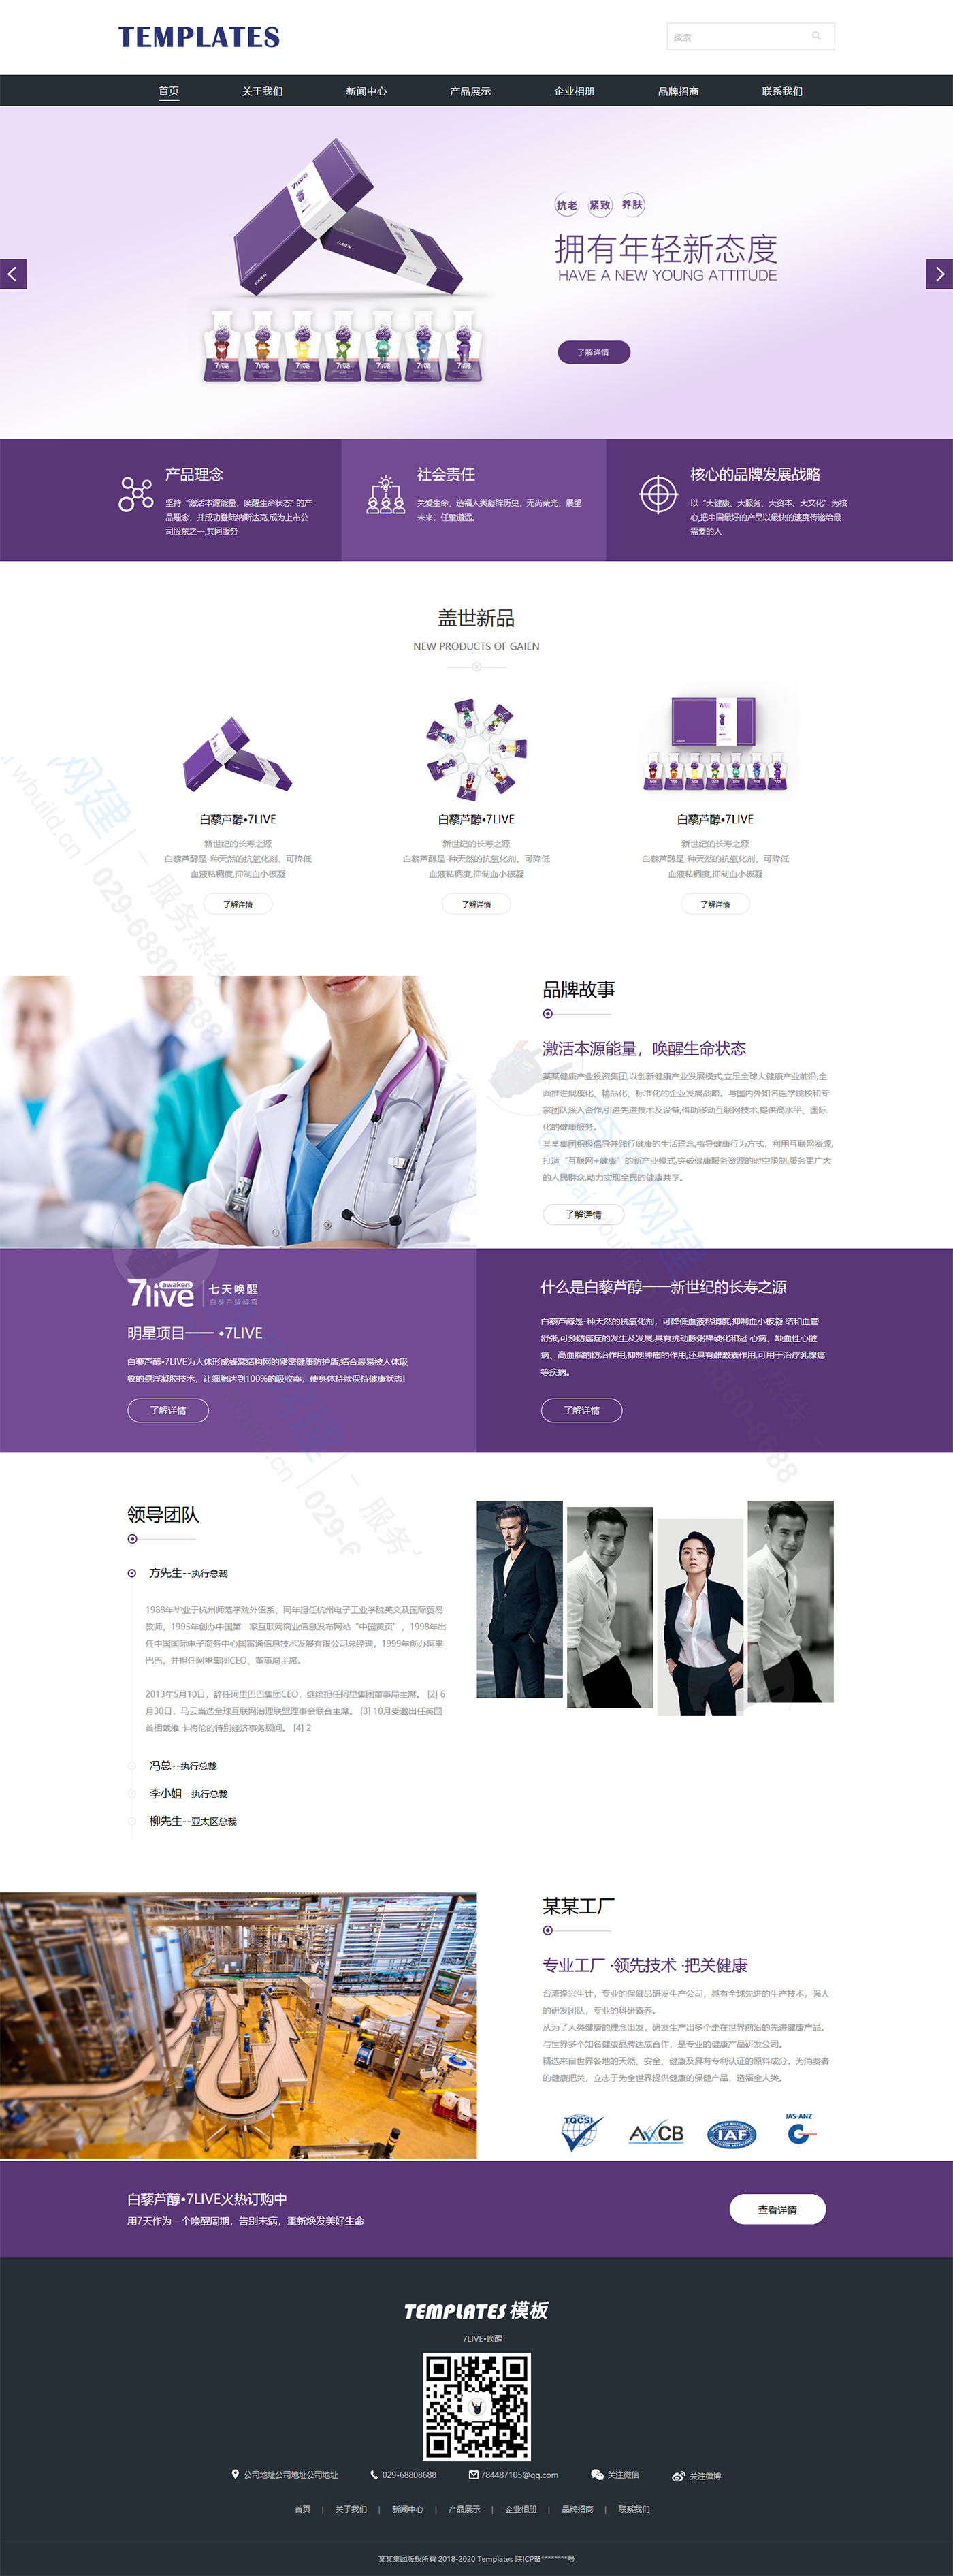 医疗健康生物保健诊所机构企业通用HTML5响应式网站建设模版